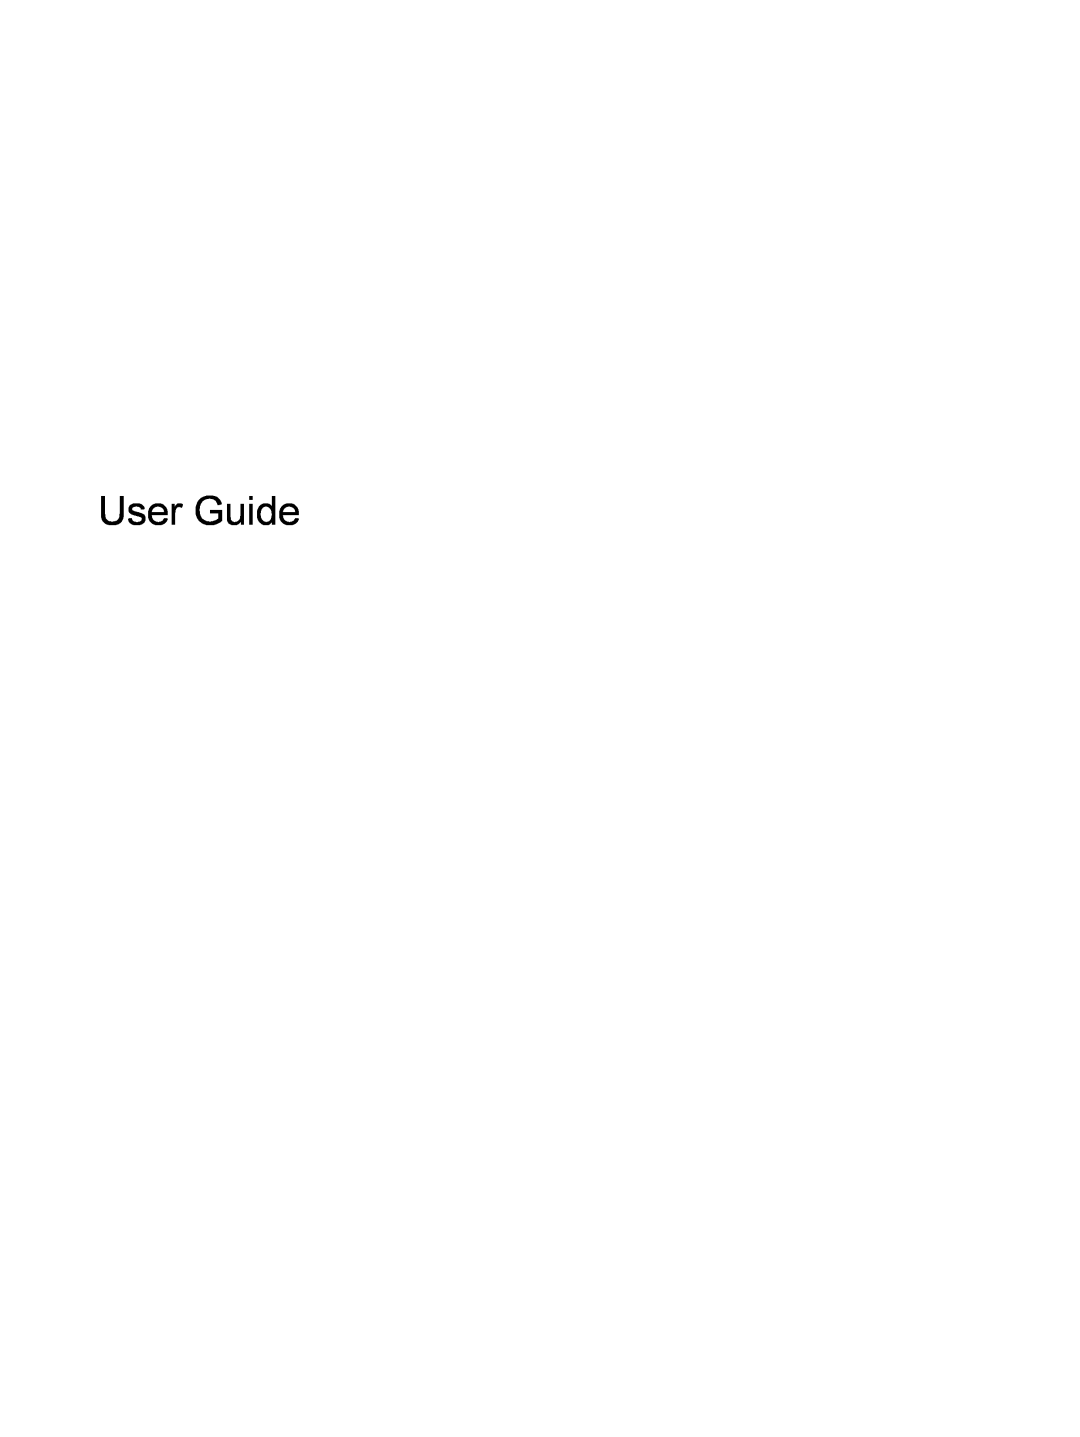 HP 7 Plus G2 - 1331 manual User Guide 